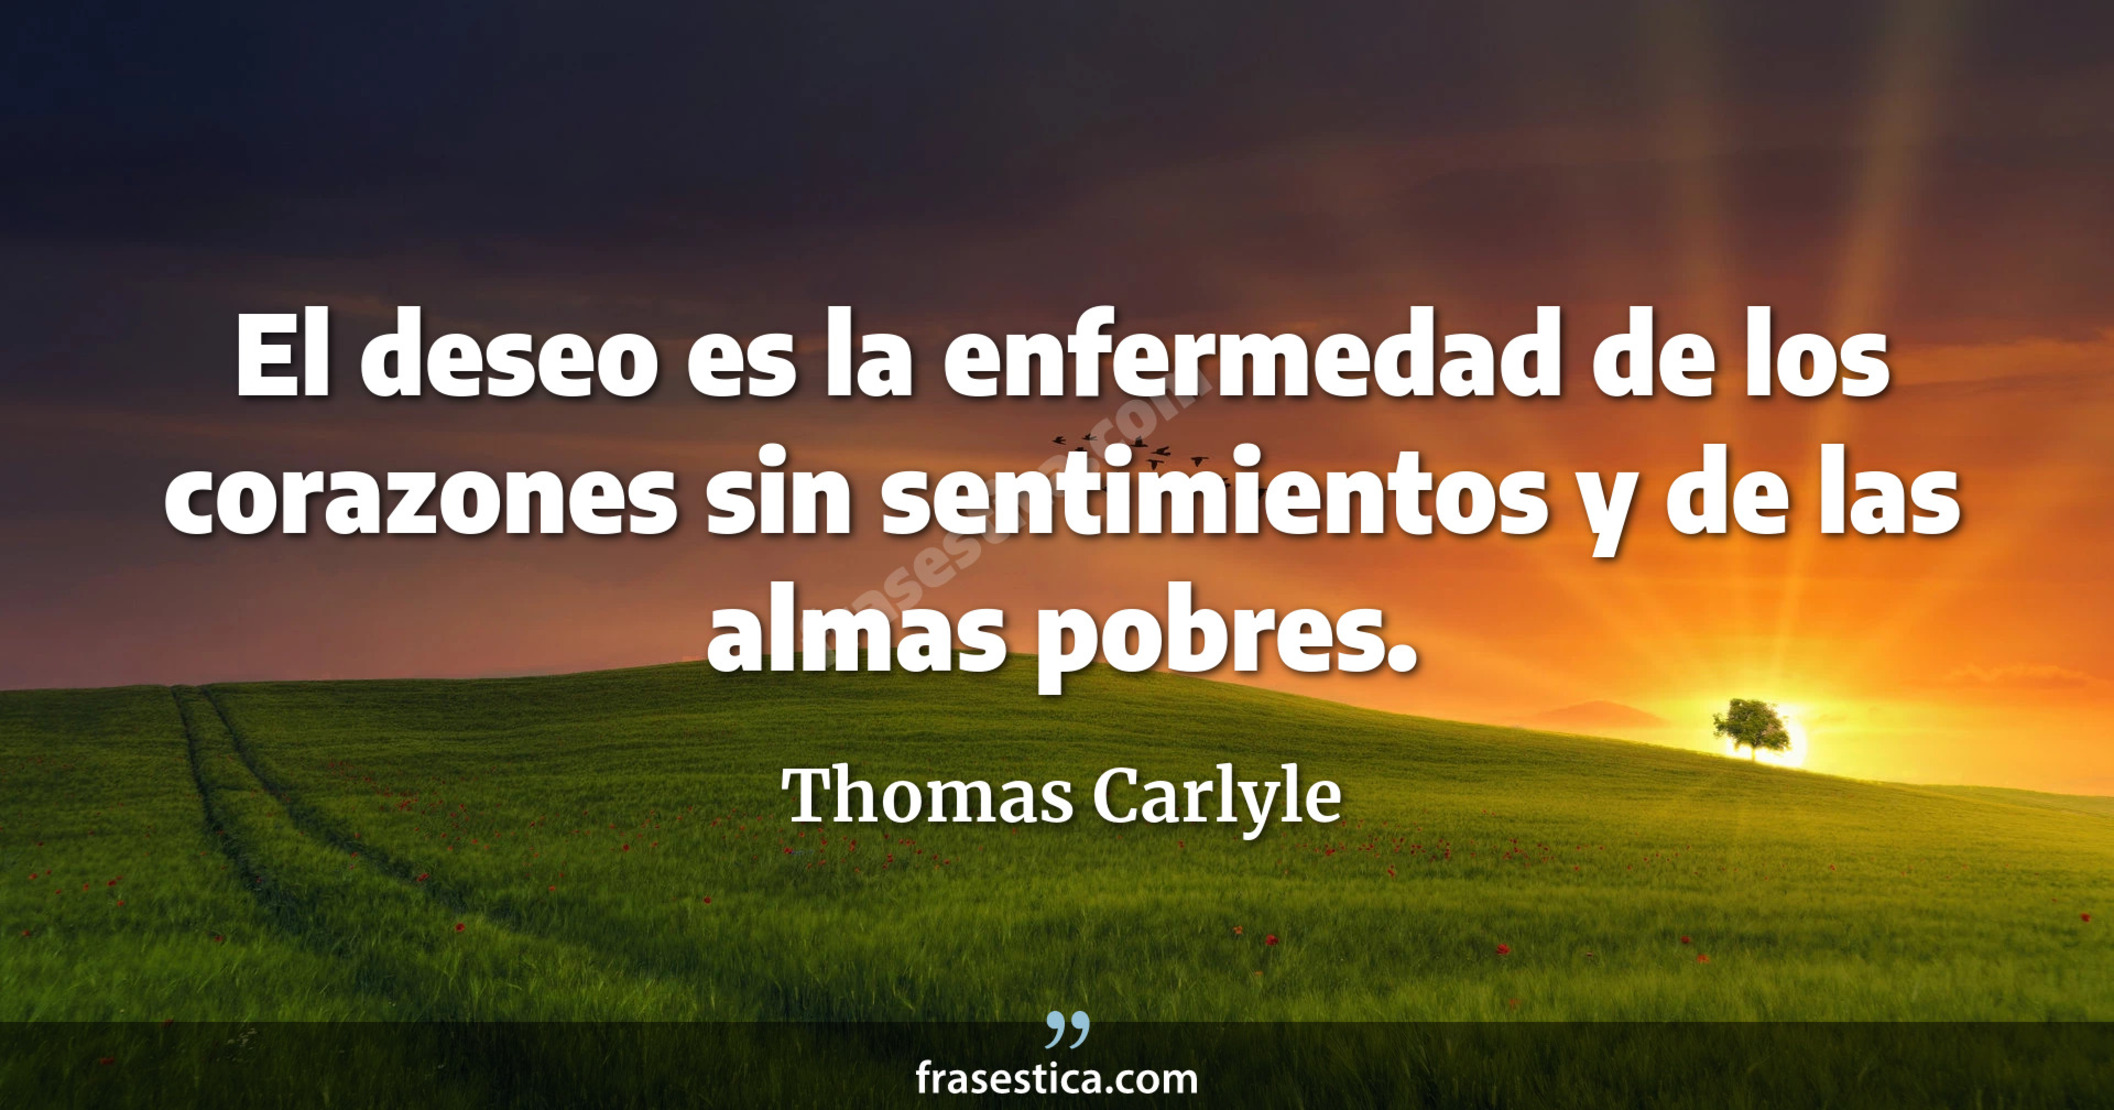 El deseo es la enfermedad de los corazones sin sentimientos y de las almas pobres. - Thomas Carlyle